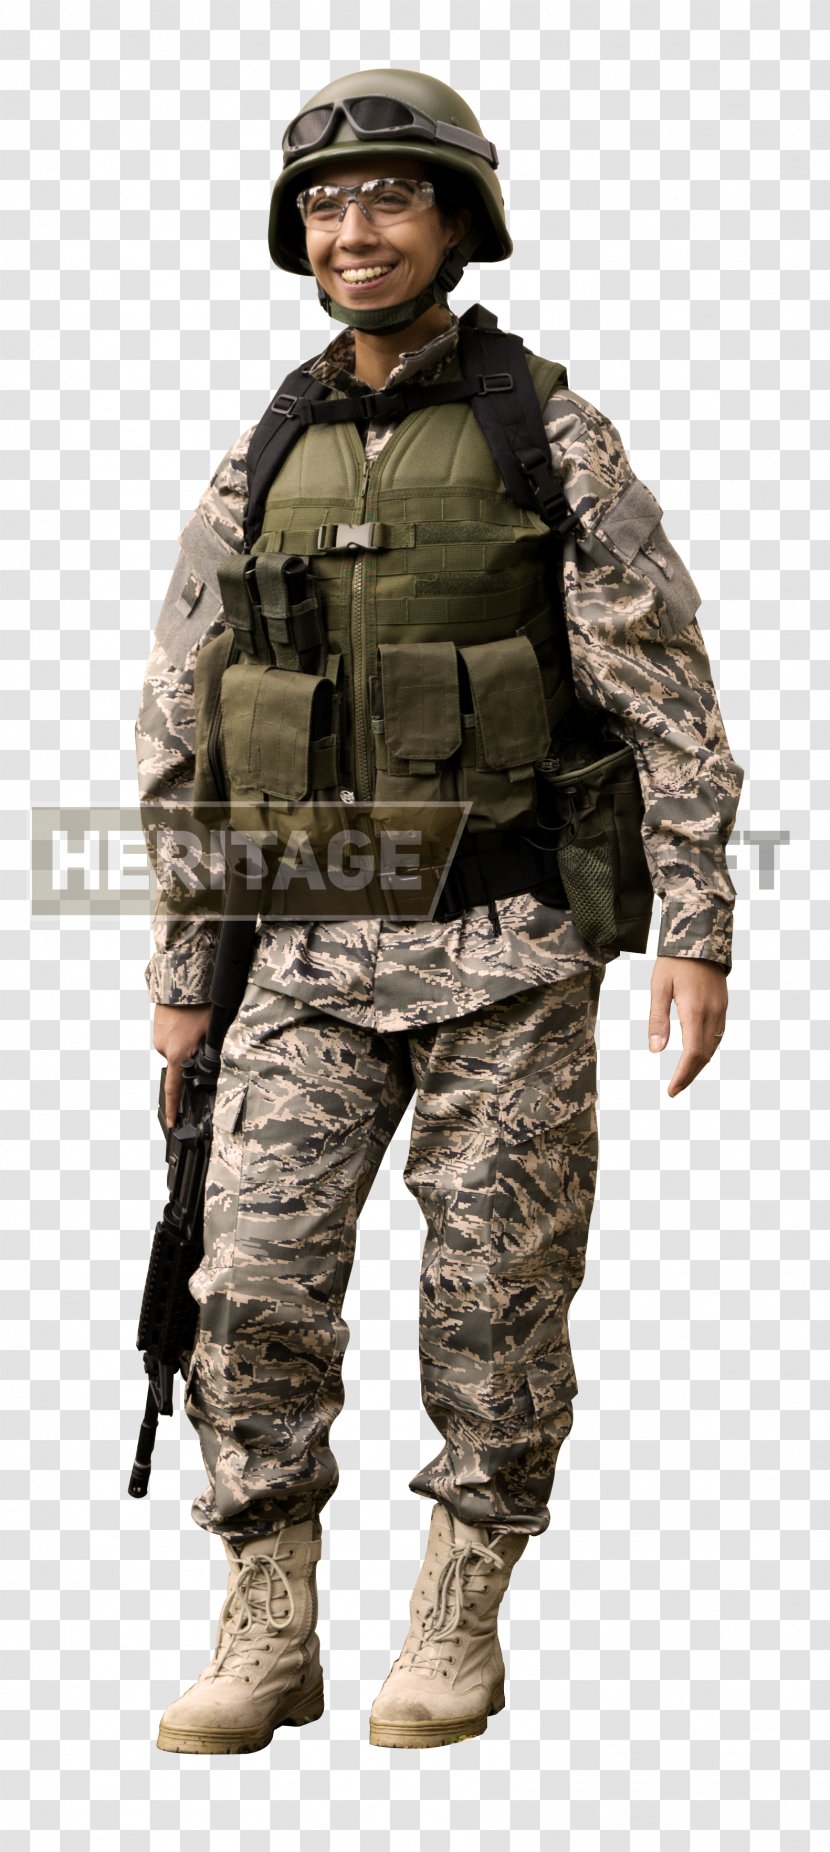 Assassin's Creed III John Matrix Commando Military Uniform - Troop - Soldier Transparent PNG